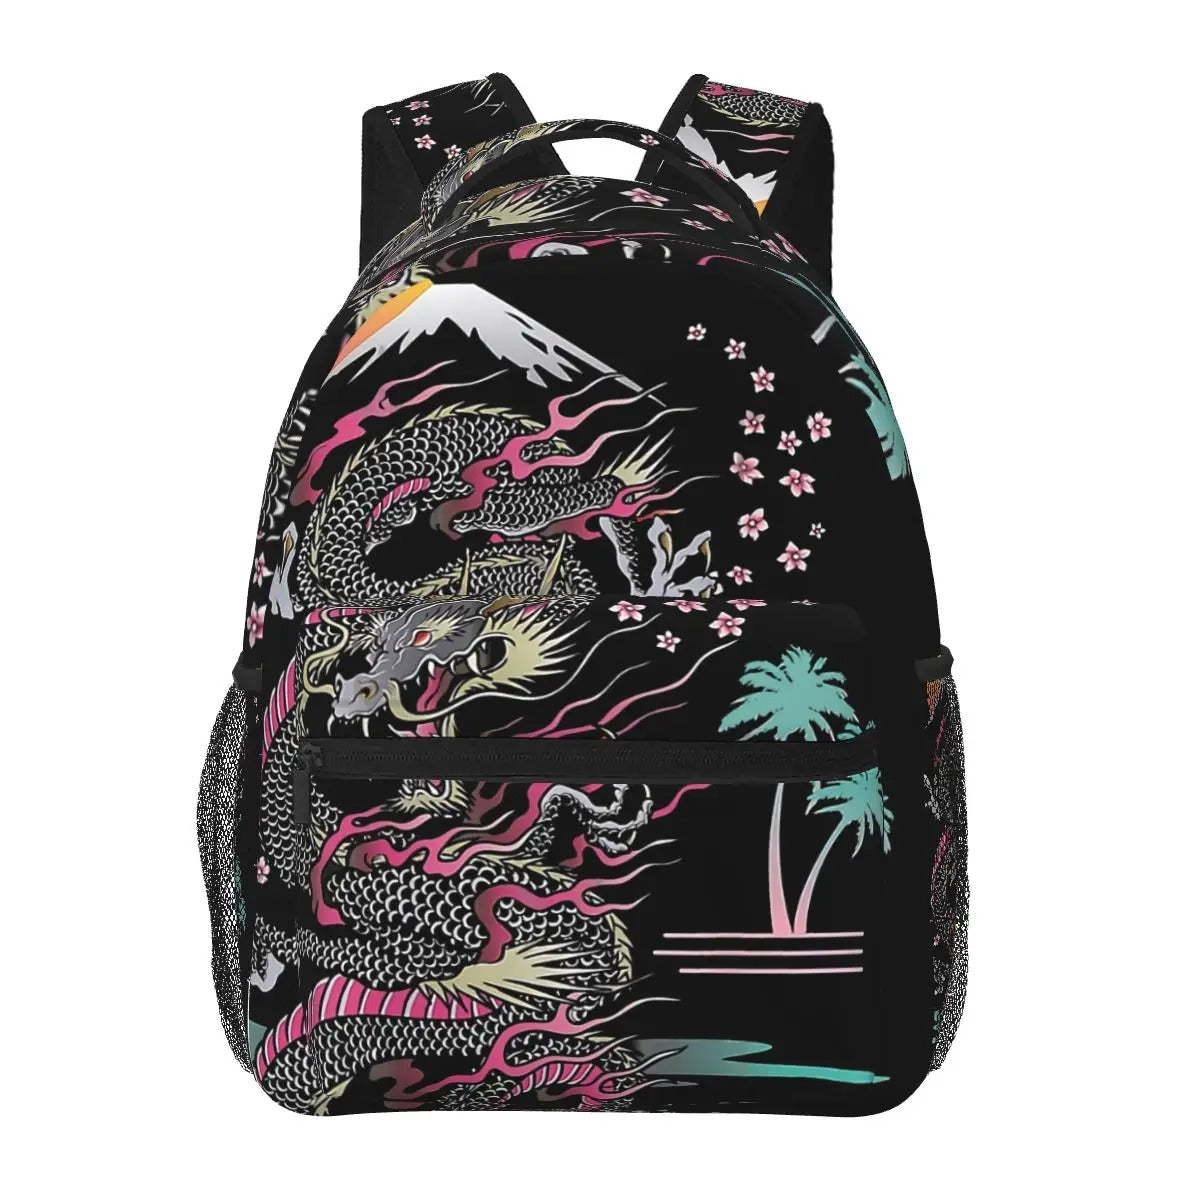 Black Dragon Backpack - 16 Inche